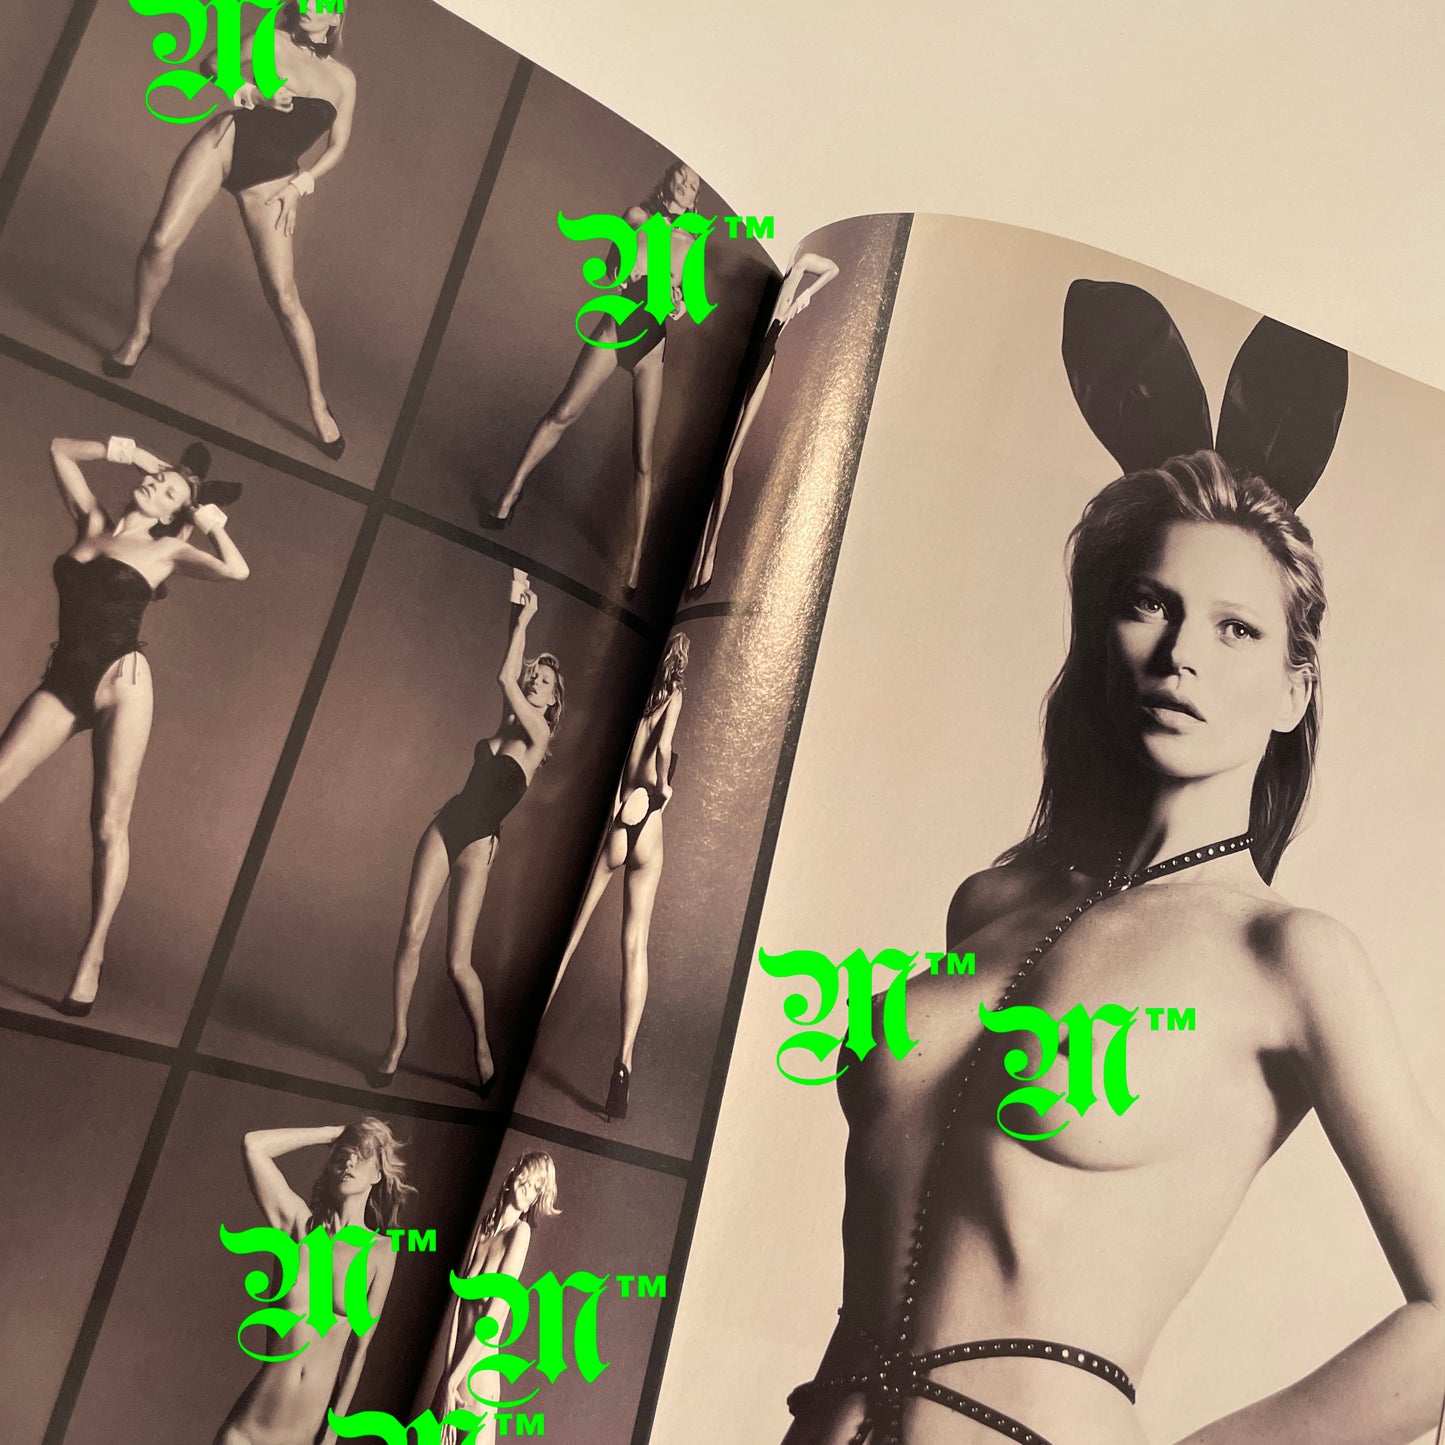 Playboy January 2014 - Kate Moss